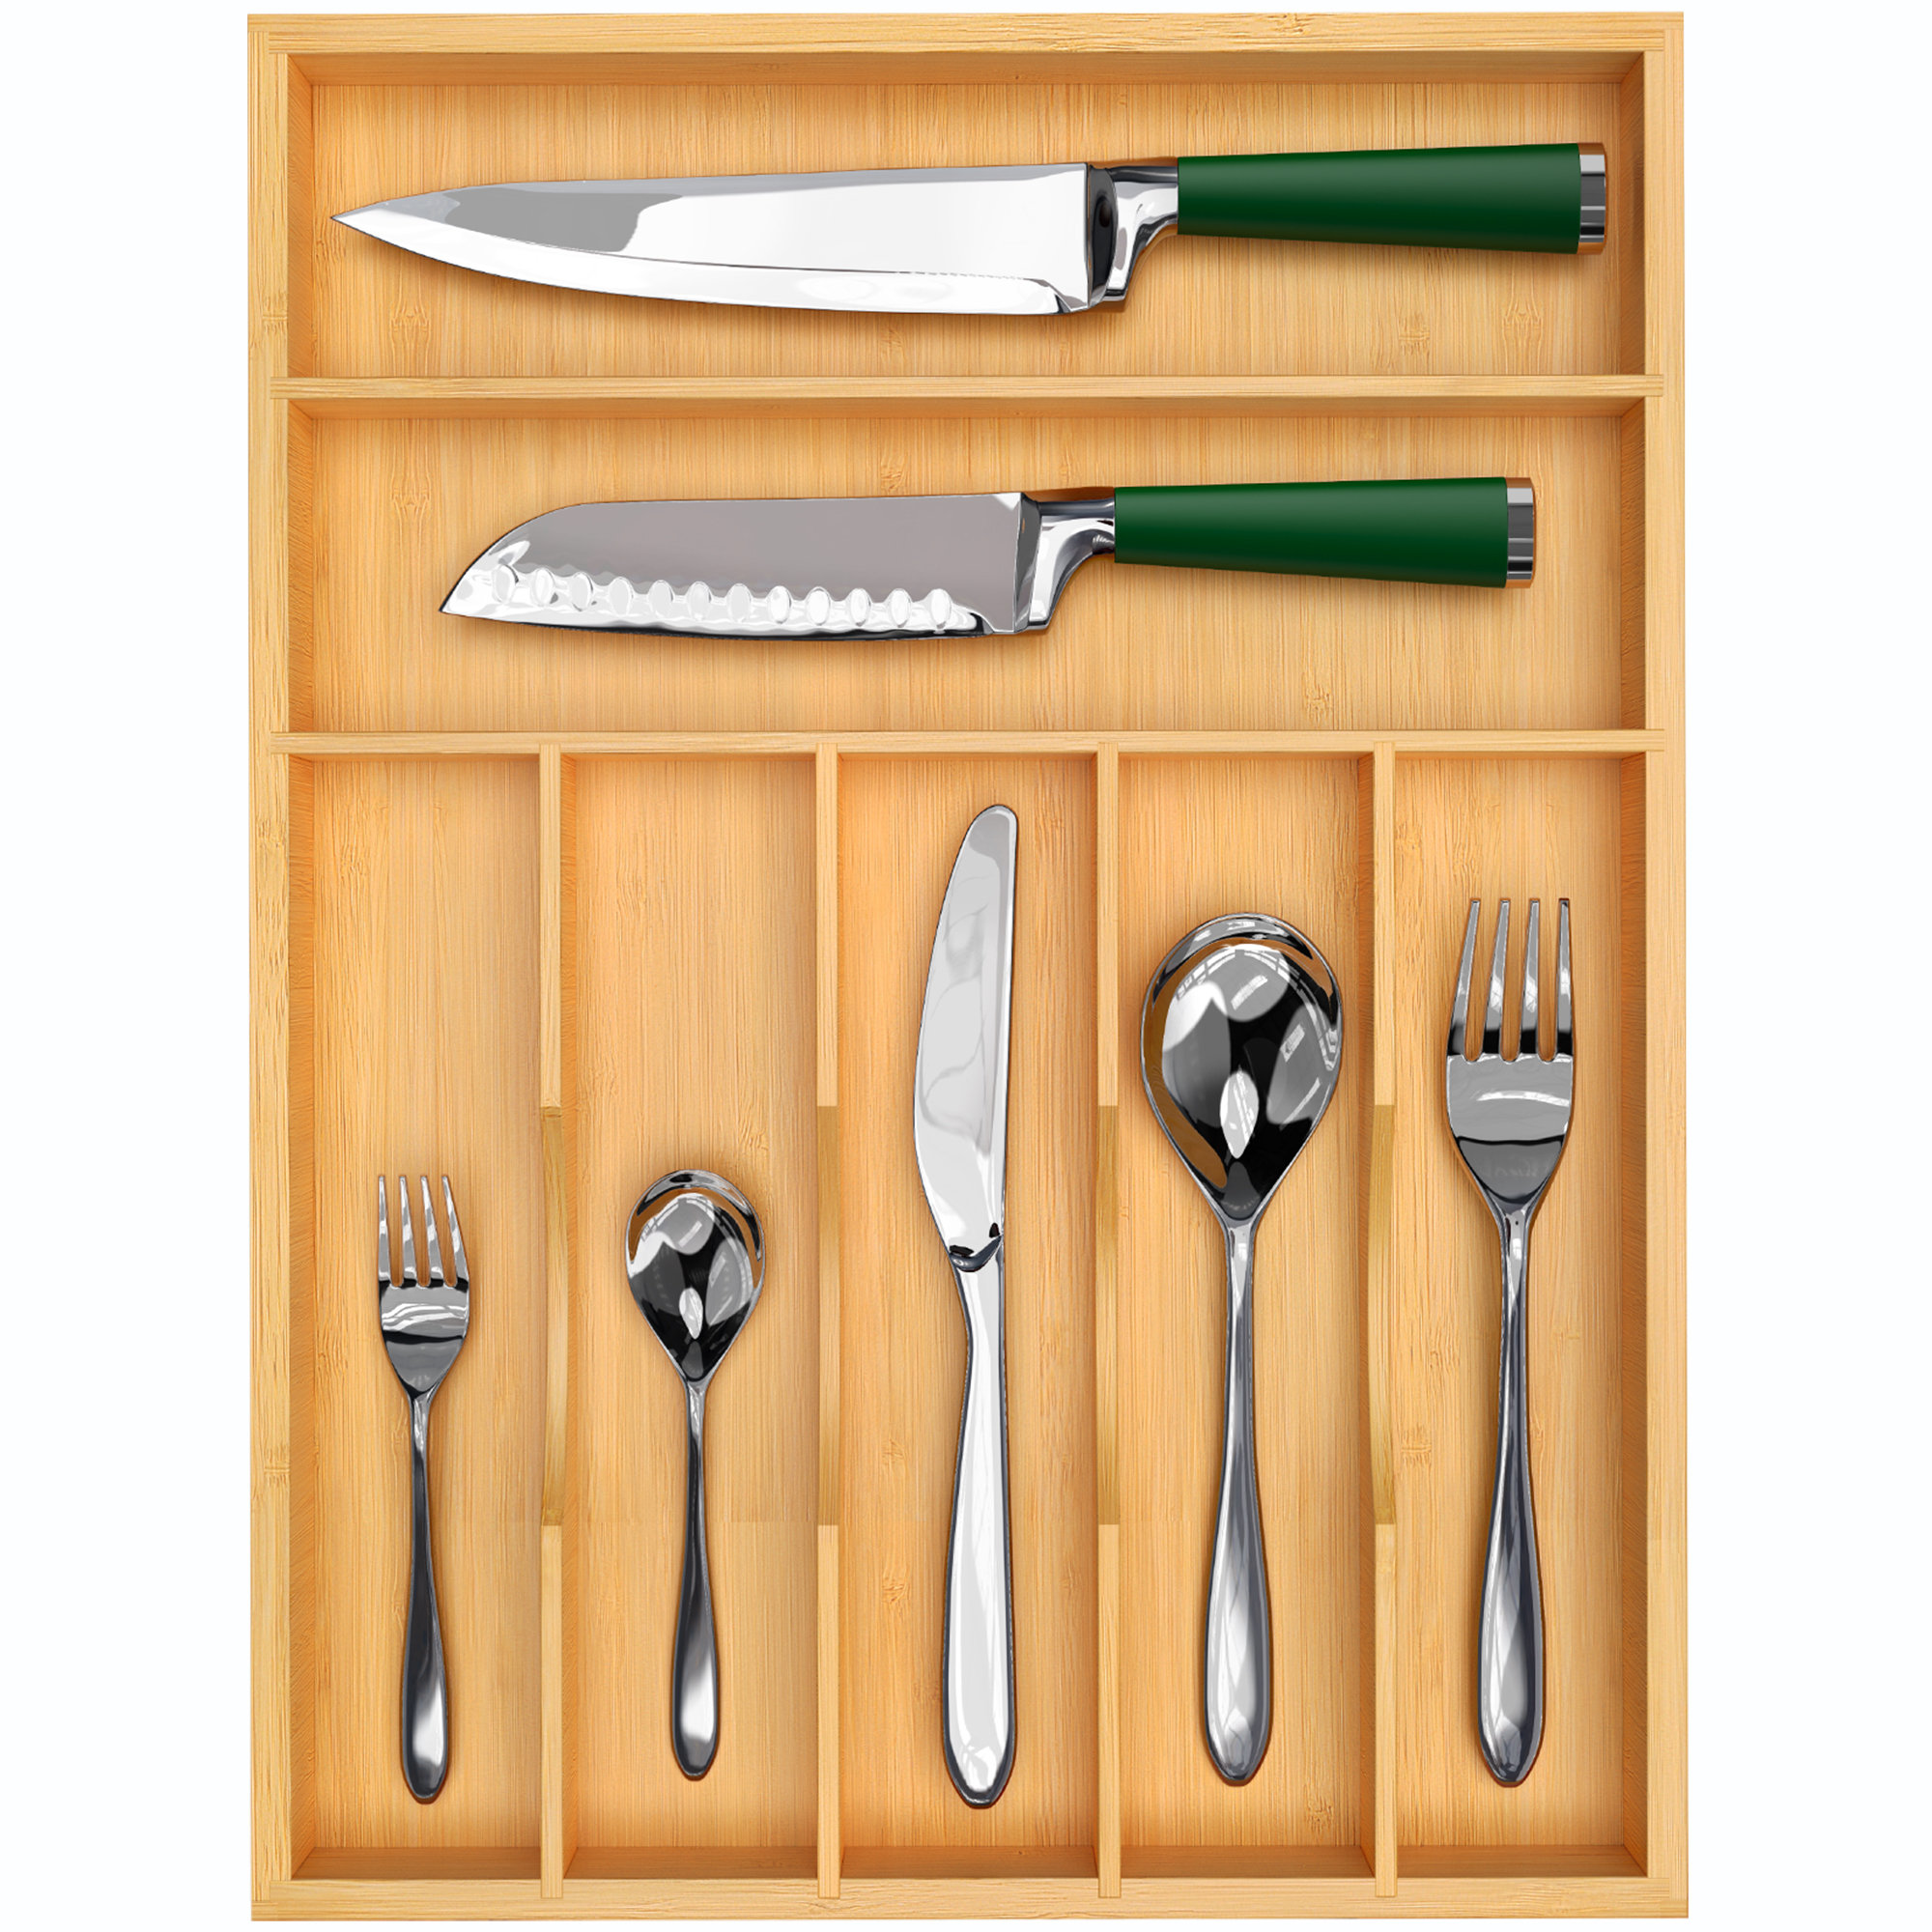 https://assets.wfcdn.com/im/43985222/compr-r85/2419/241908811/bamboo-kitchen-drawer-organizer-silverware-organizerutensil-holder-and-cutlery-tray-black.jpg